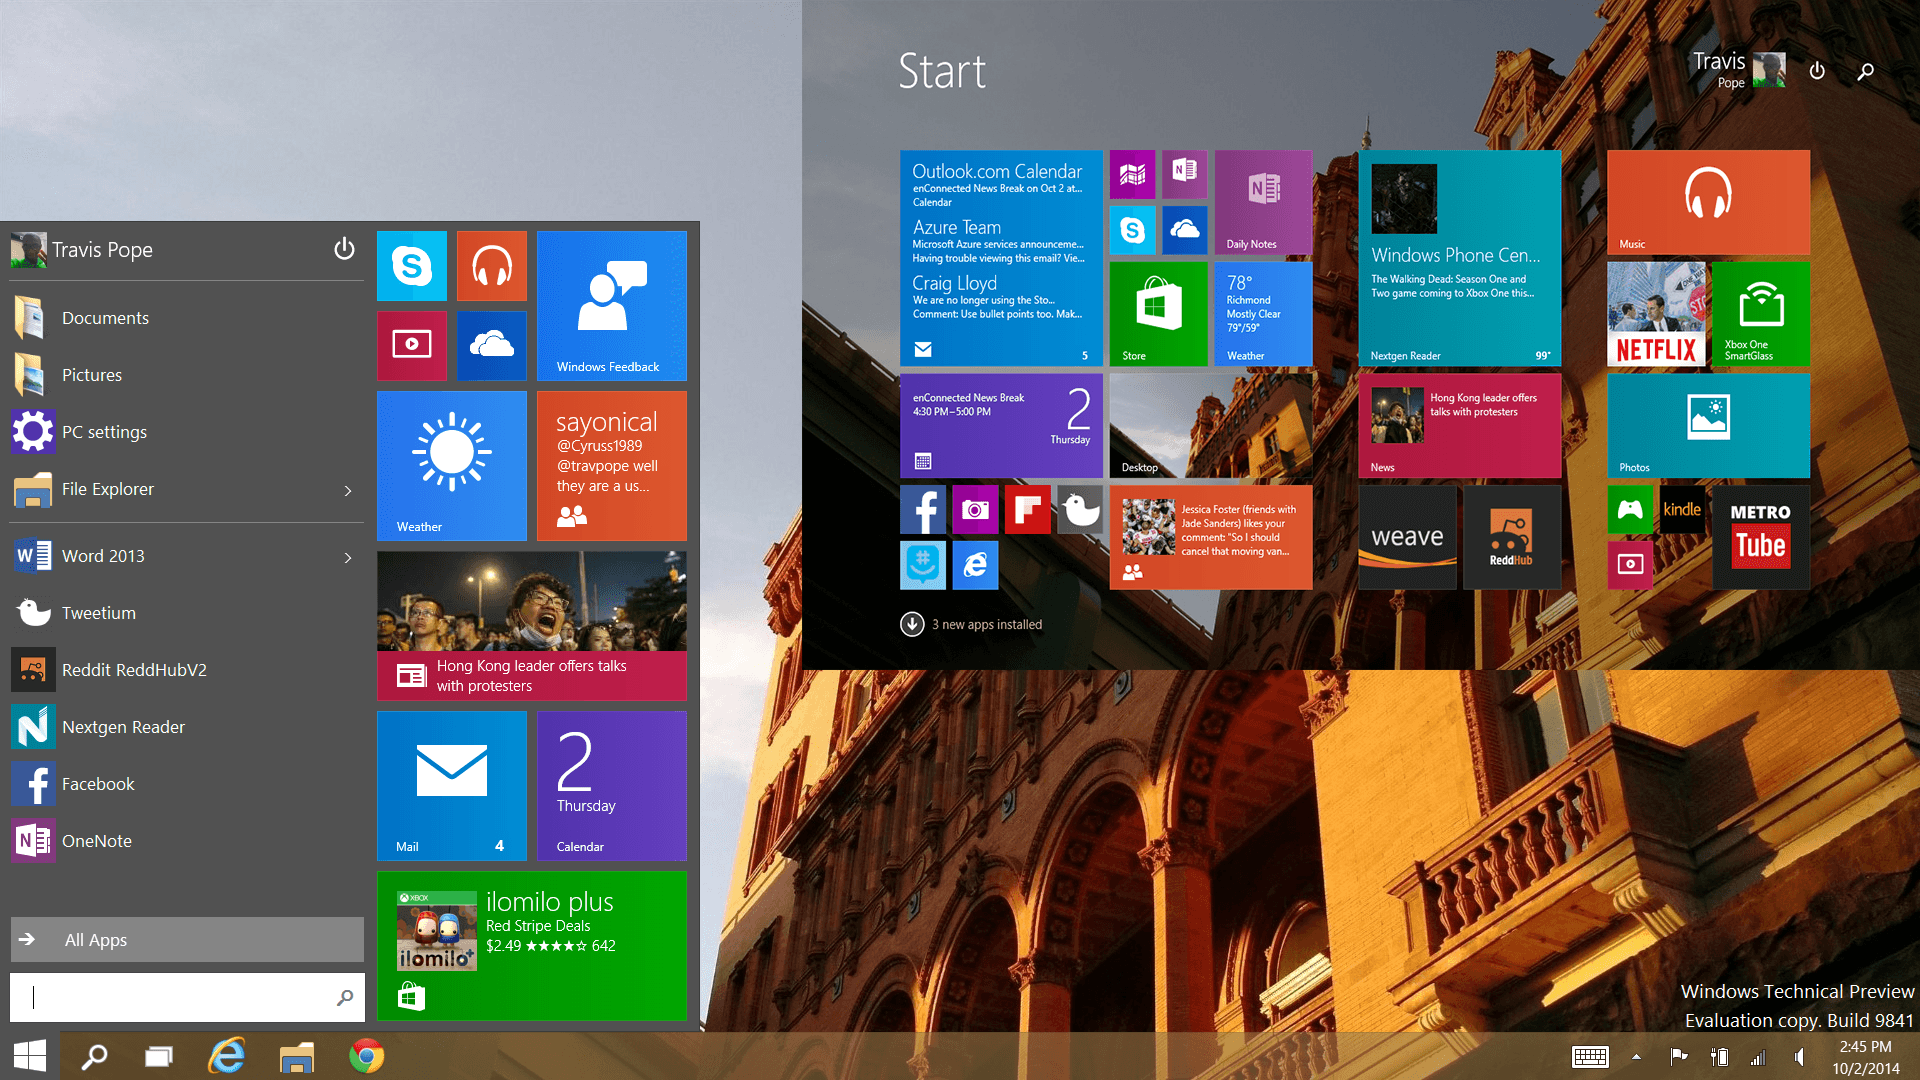 Windows 10 Start Screen New Features